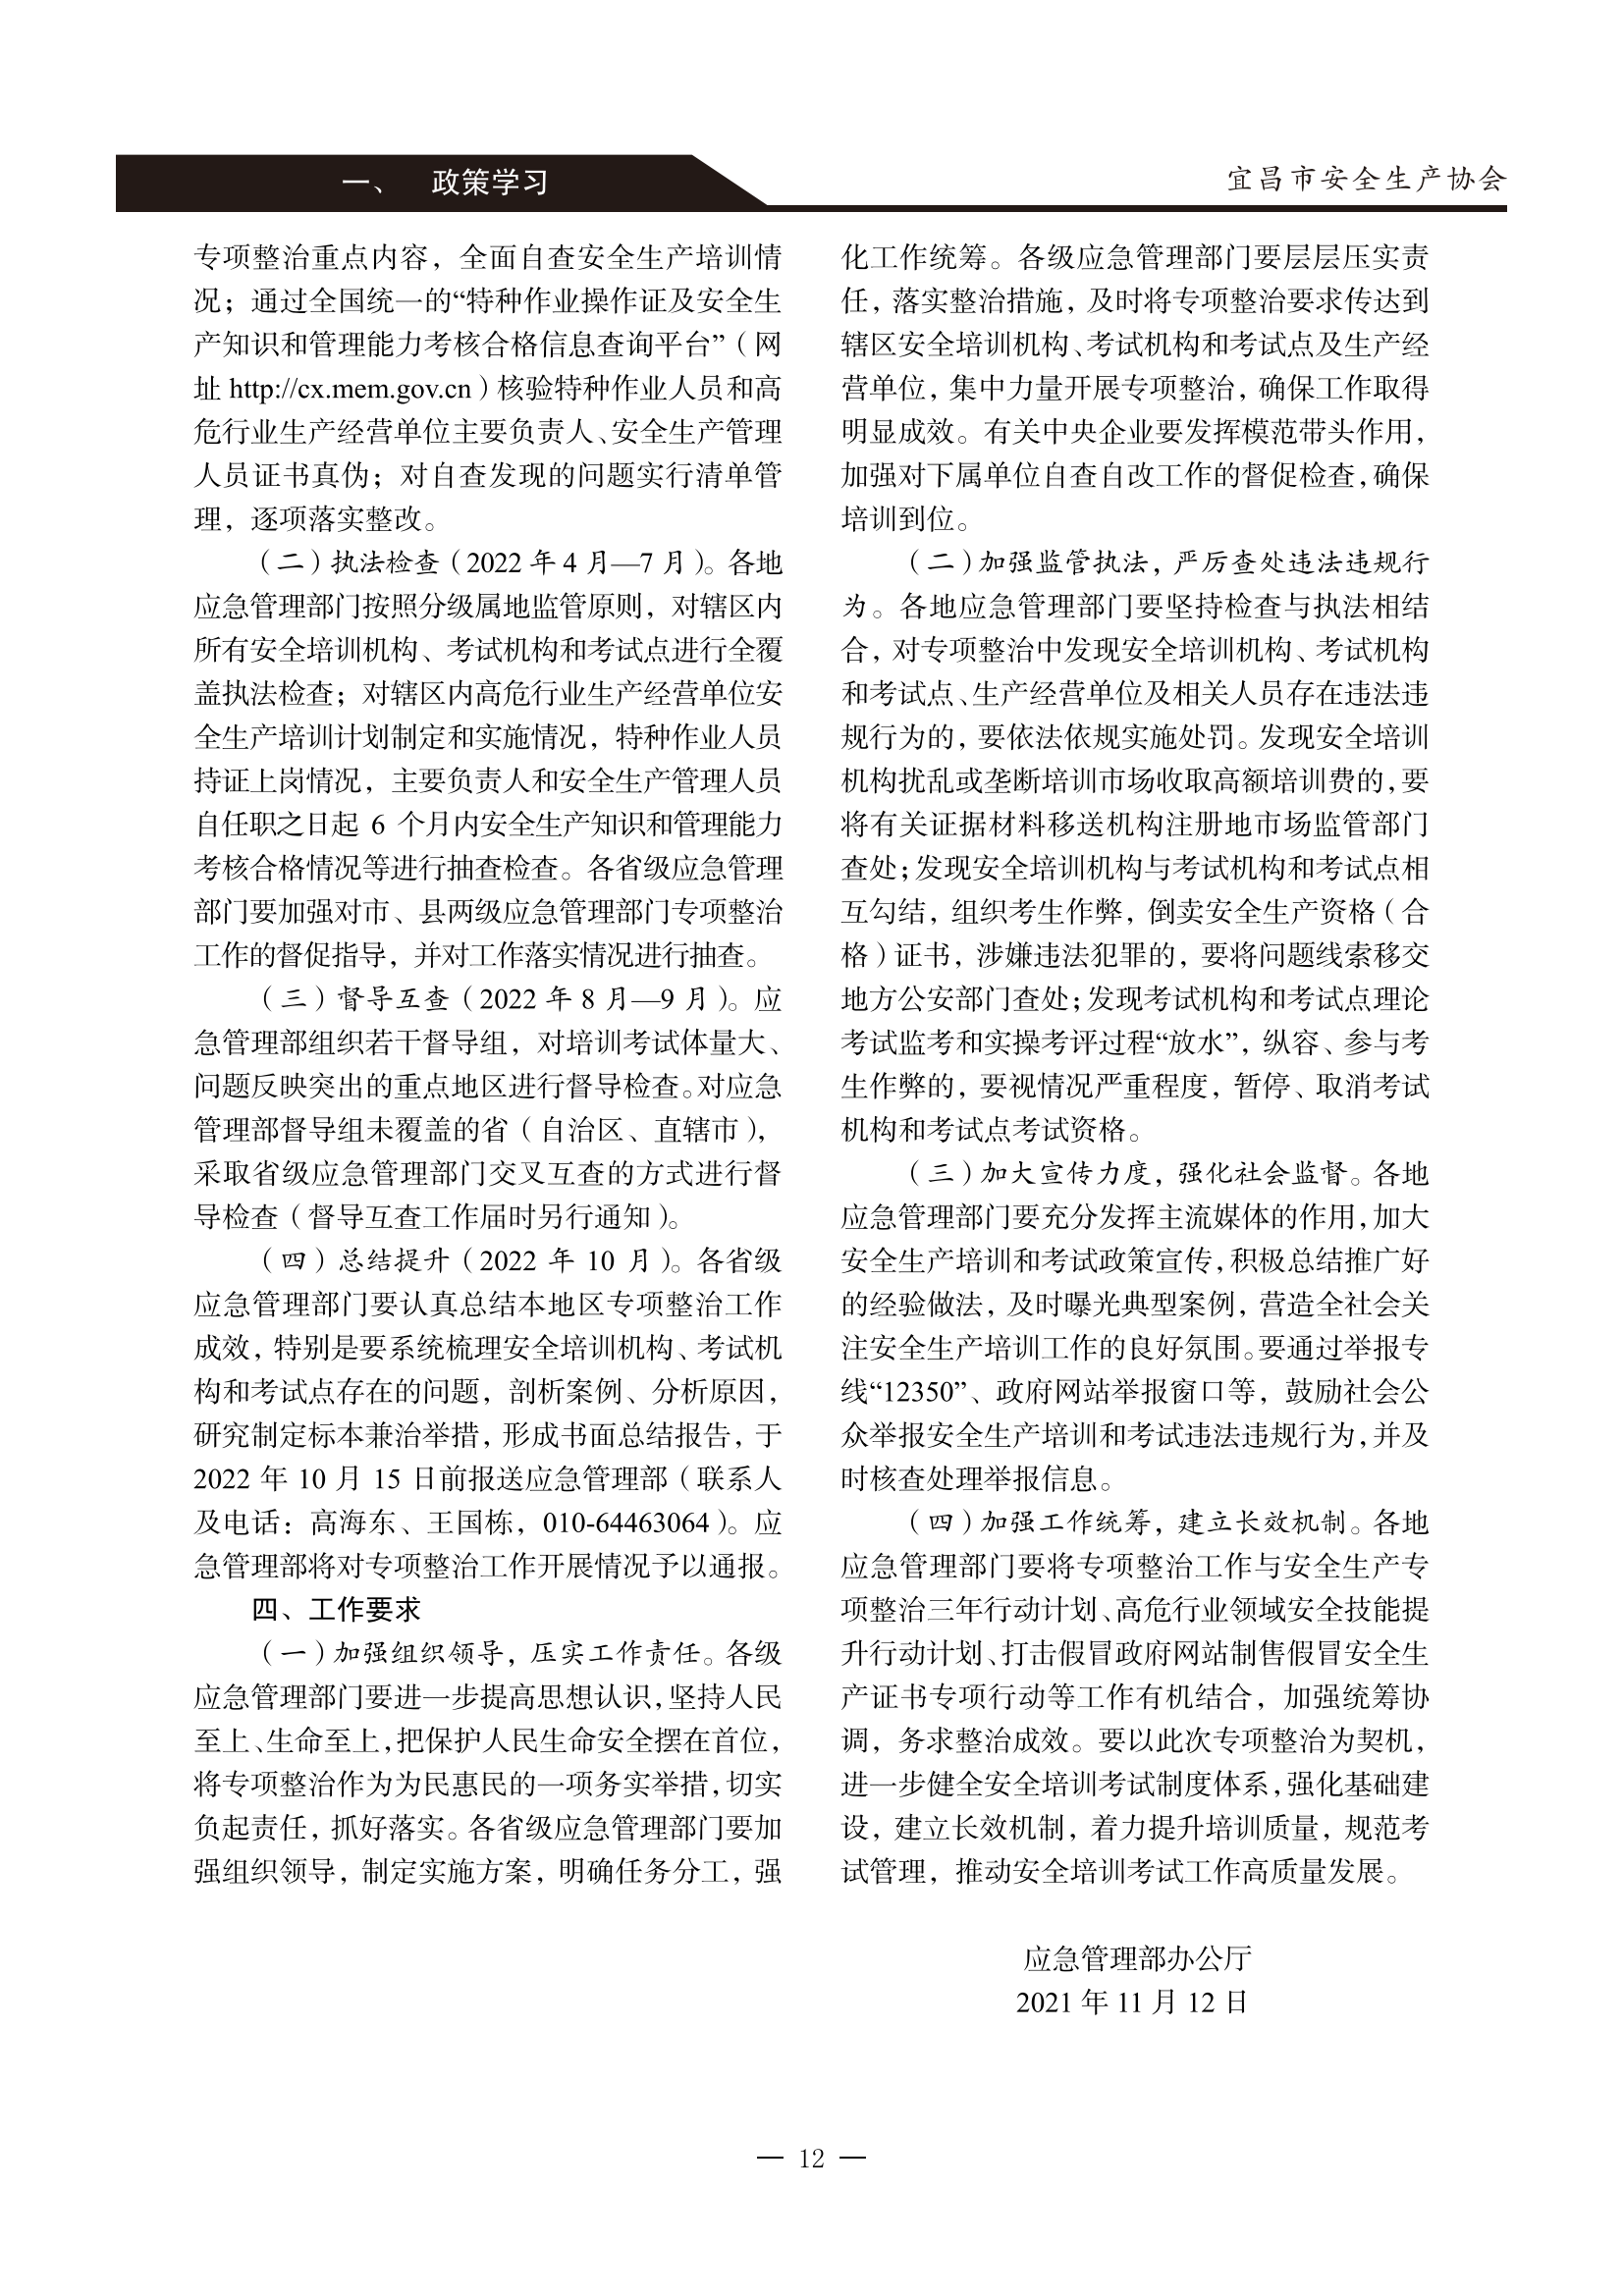 宜昌安全生产期刊第一期_17.png